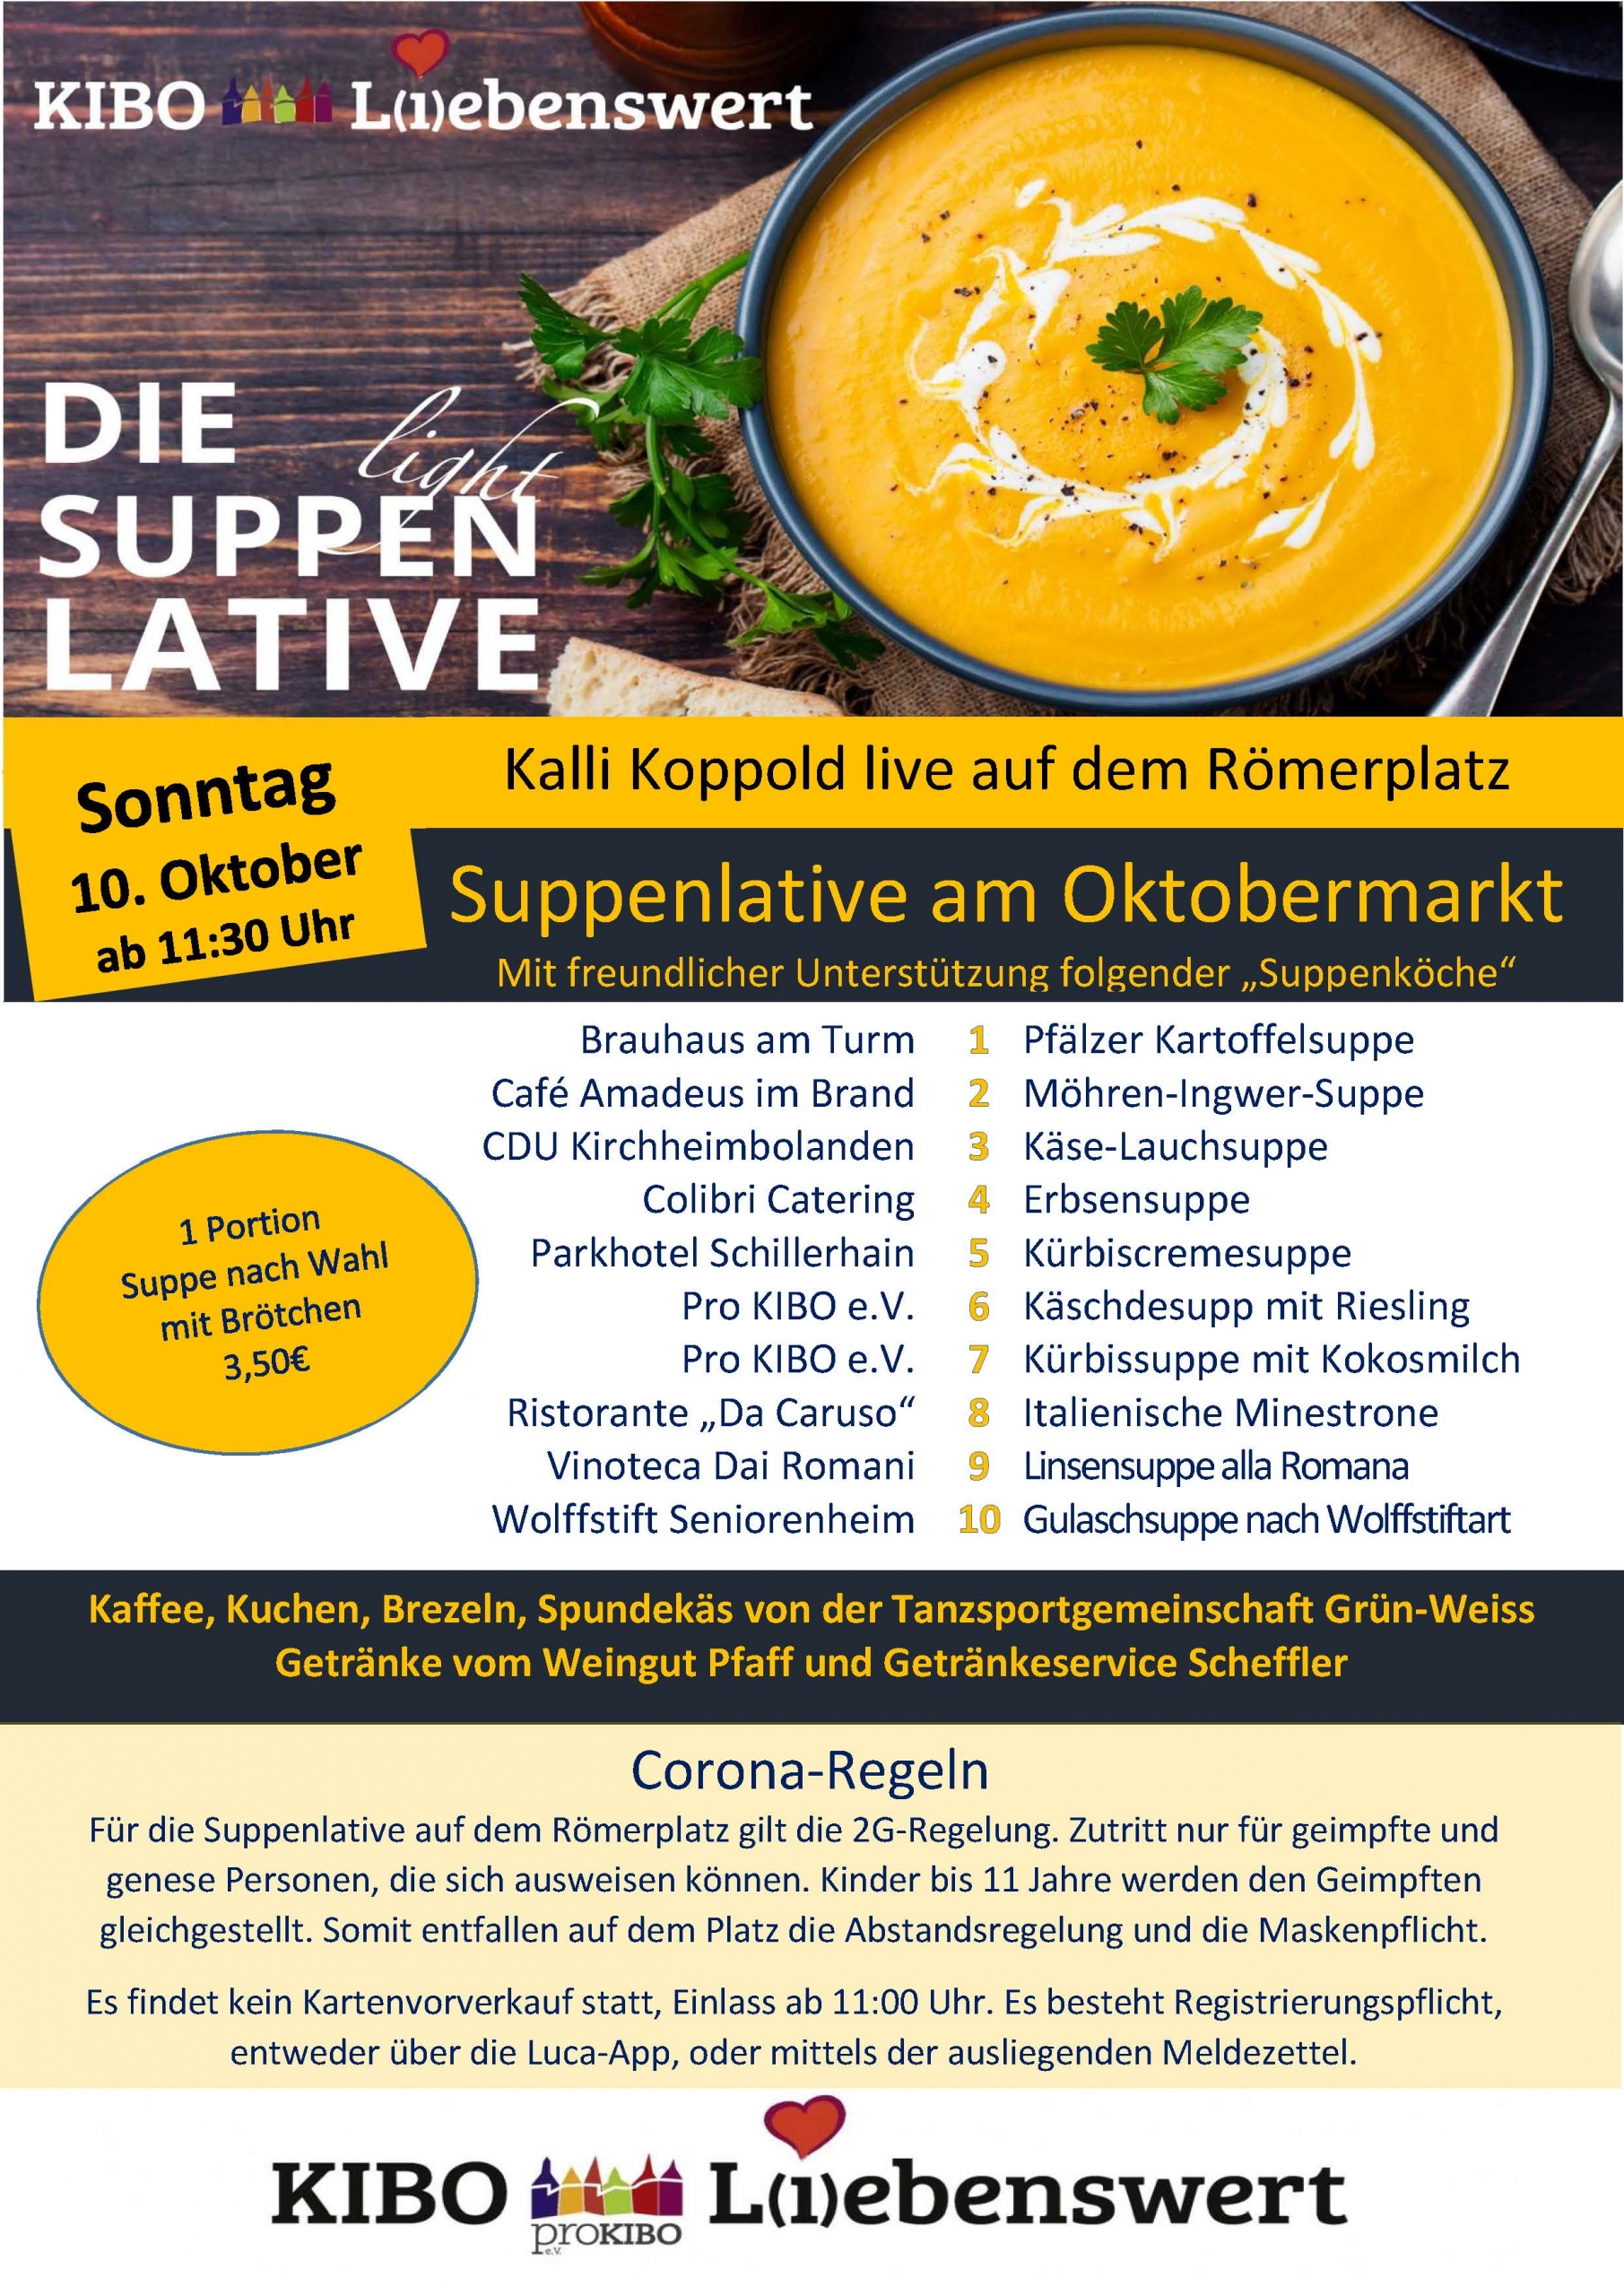 KIBO Liebenswert der Oktobermarkt 2021 - Suppenlative am 10.10.2021 in Kirchheimbolanden auf dem Römerplatz präsentiert von proKIBO e.V.